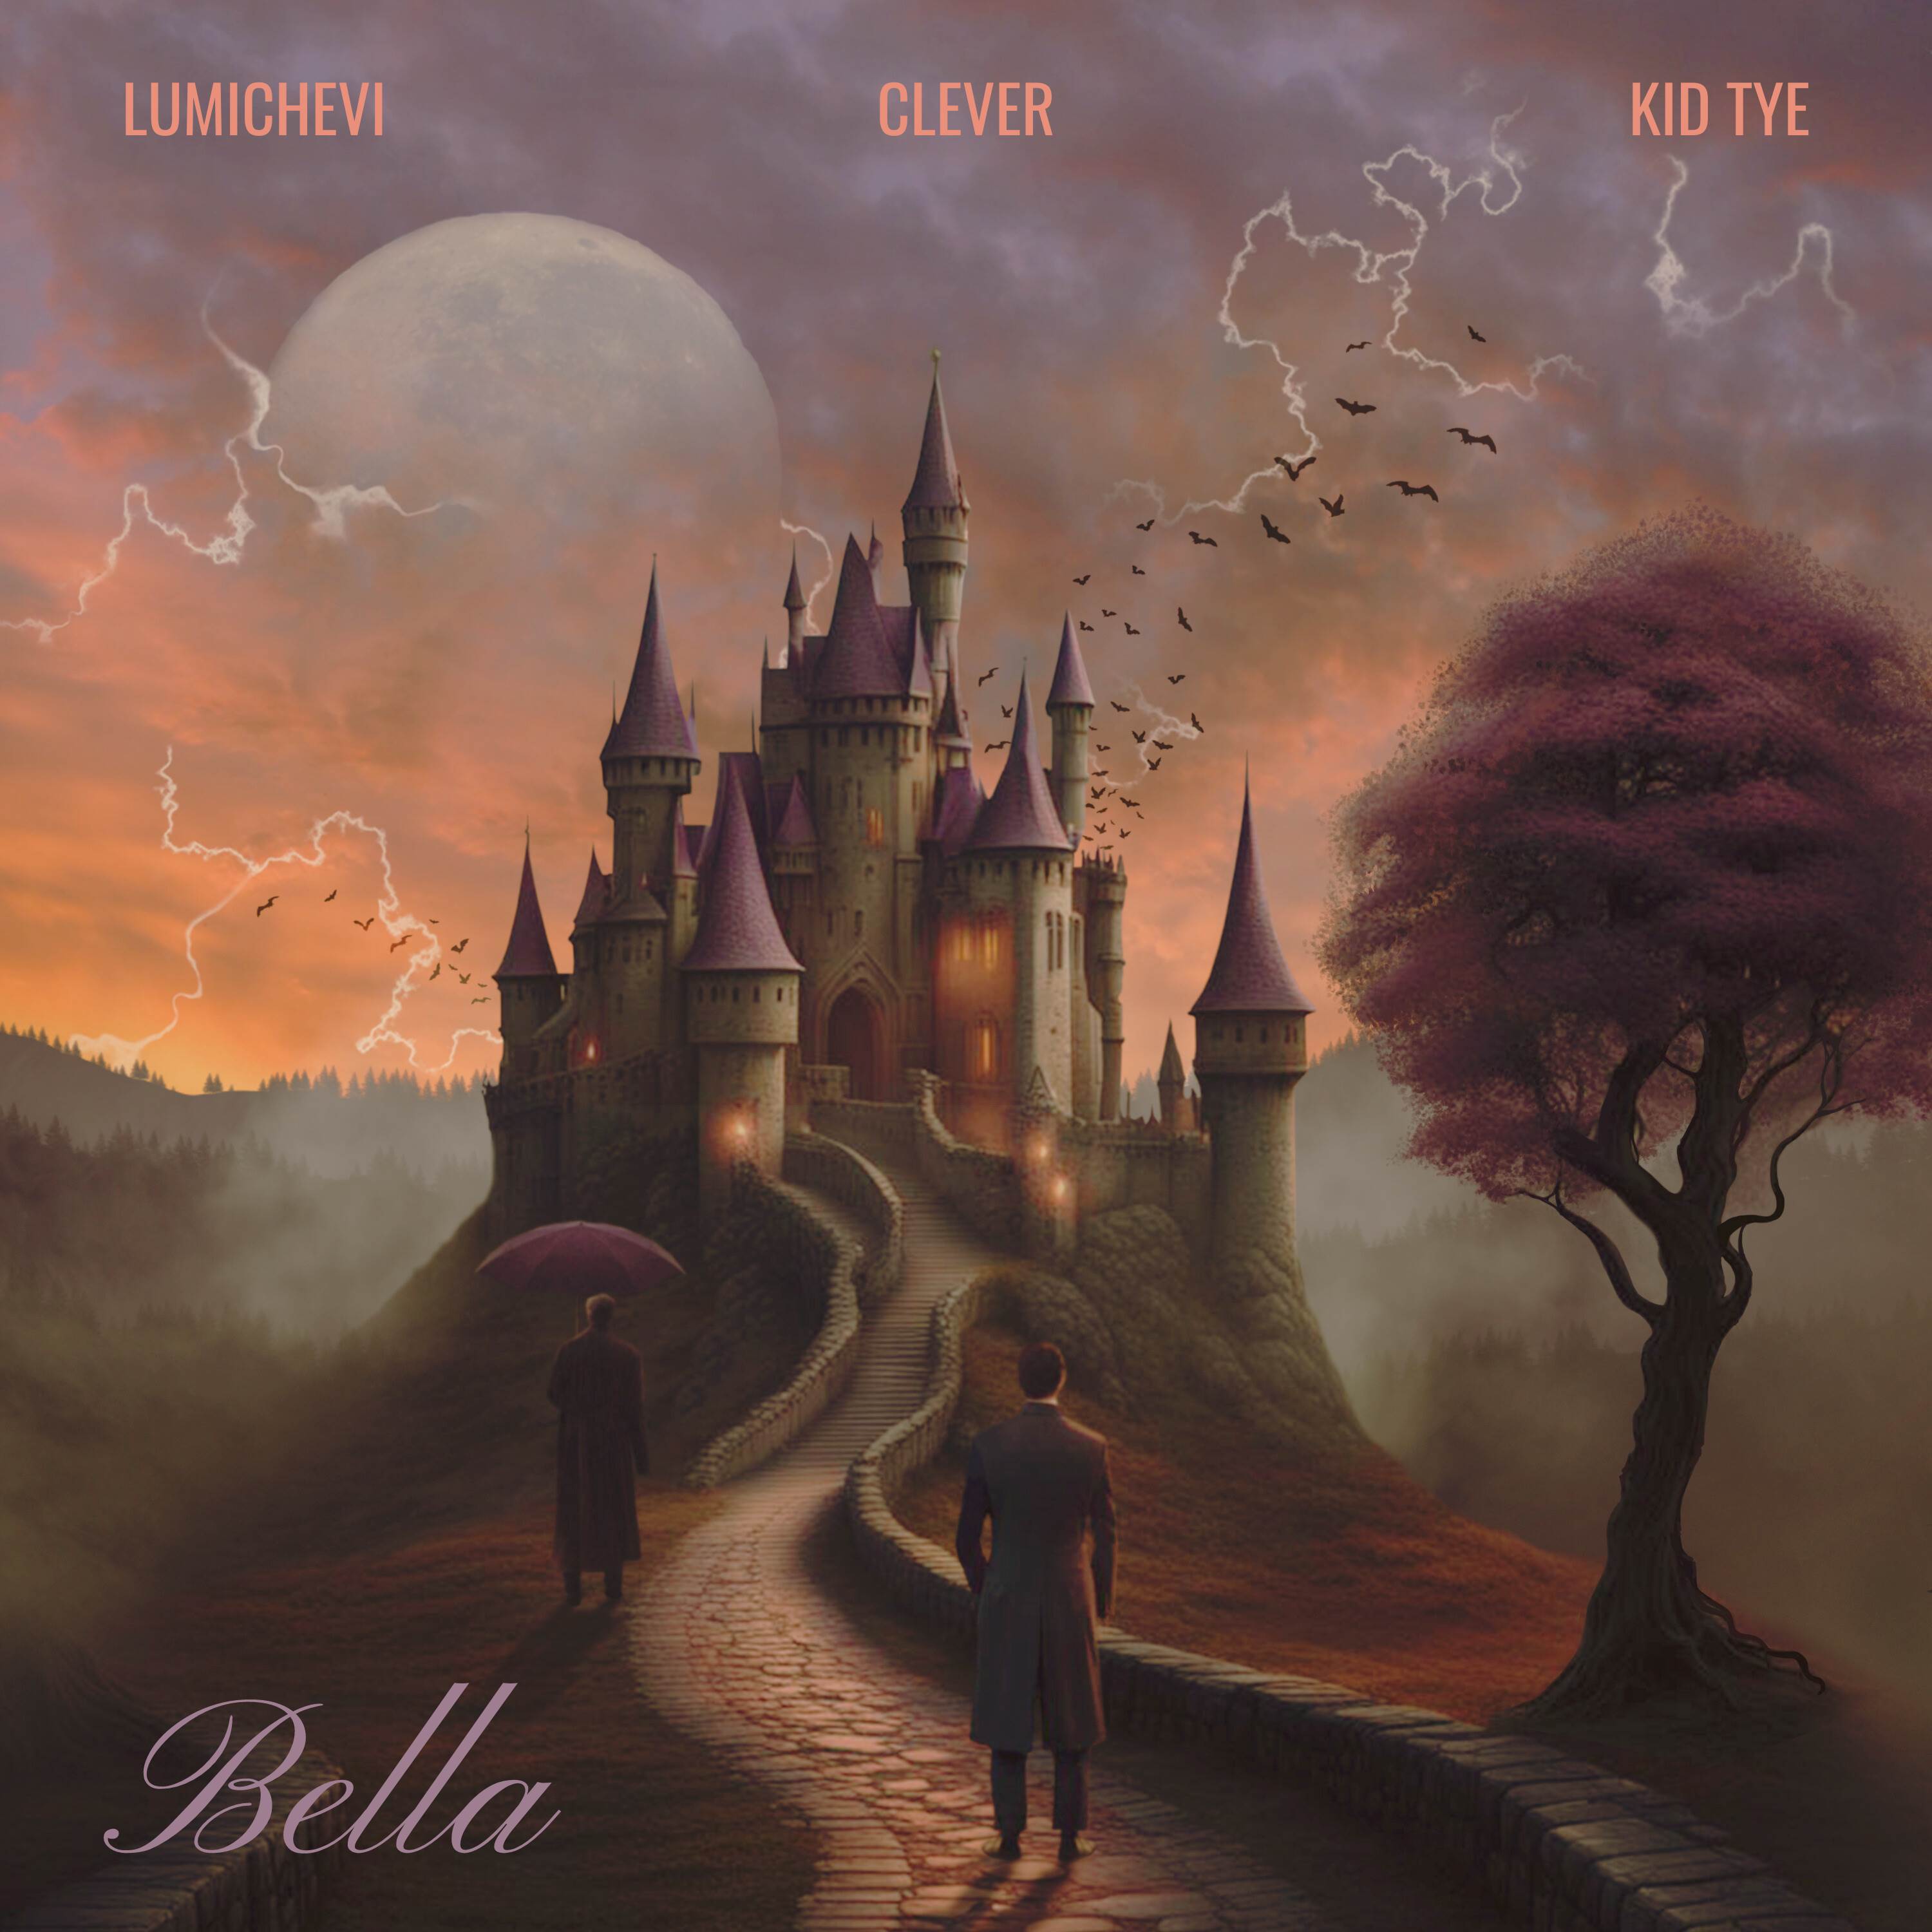 Lumichevi - Bella III (Sped Up)